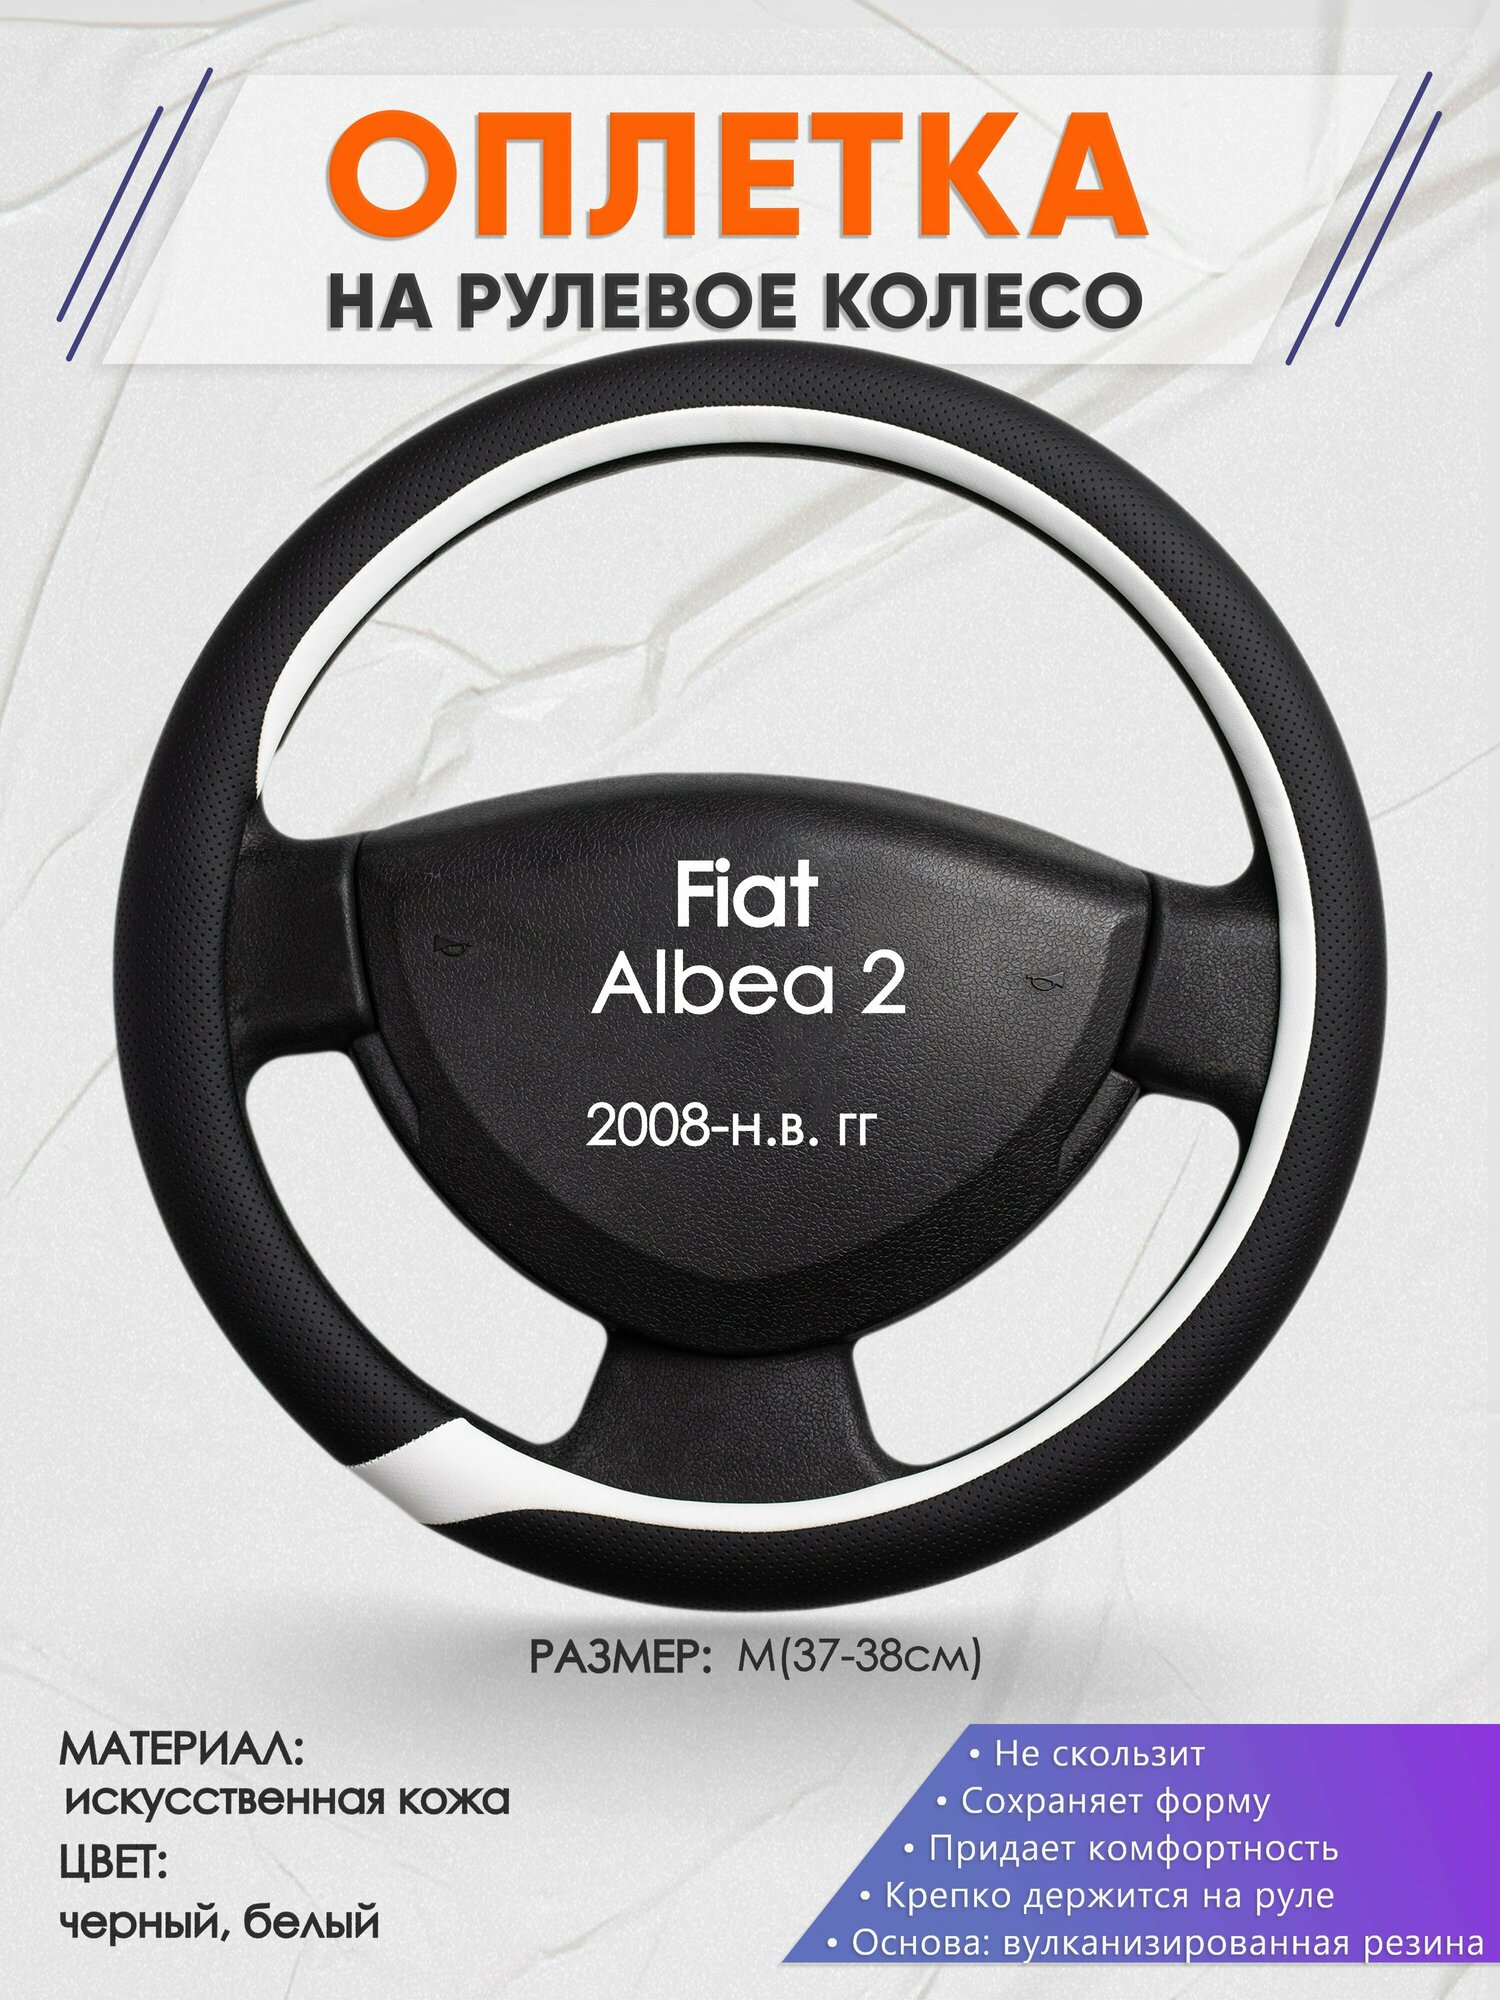 Оплетка на руль для Fiat Albea 2(Фиат Альбеа) 2008-н. в, M(37-38см), Искусственная кожа 92